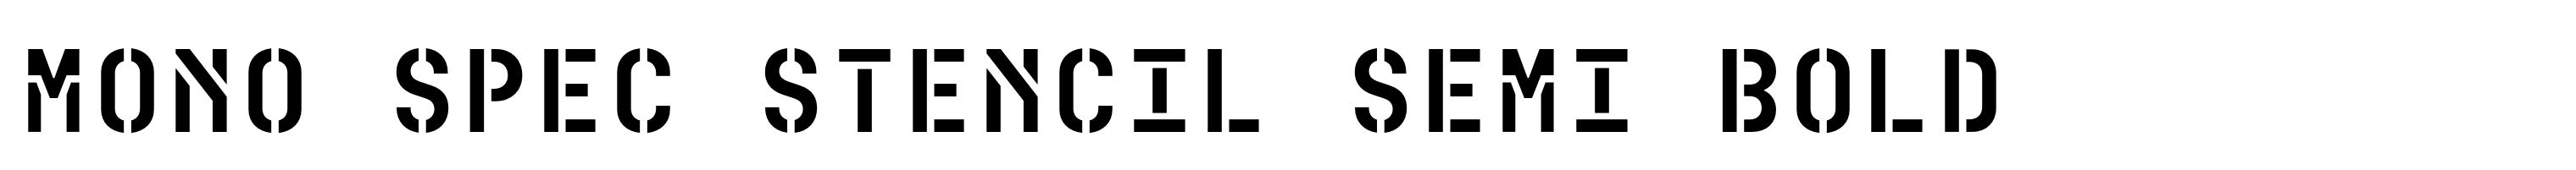 Mono Spec Stencil Semi Bold